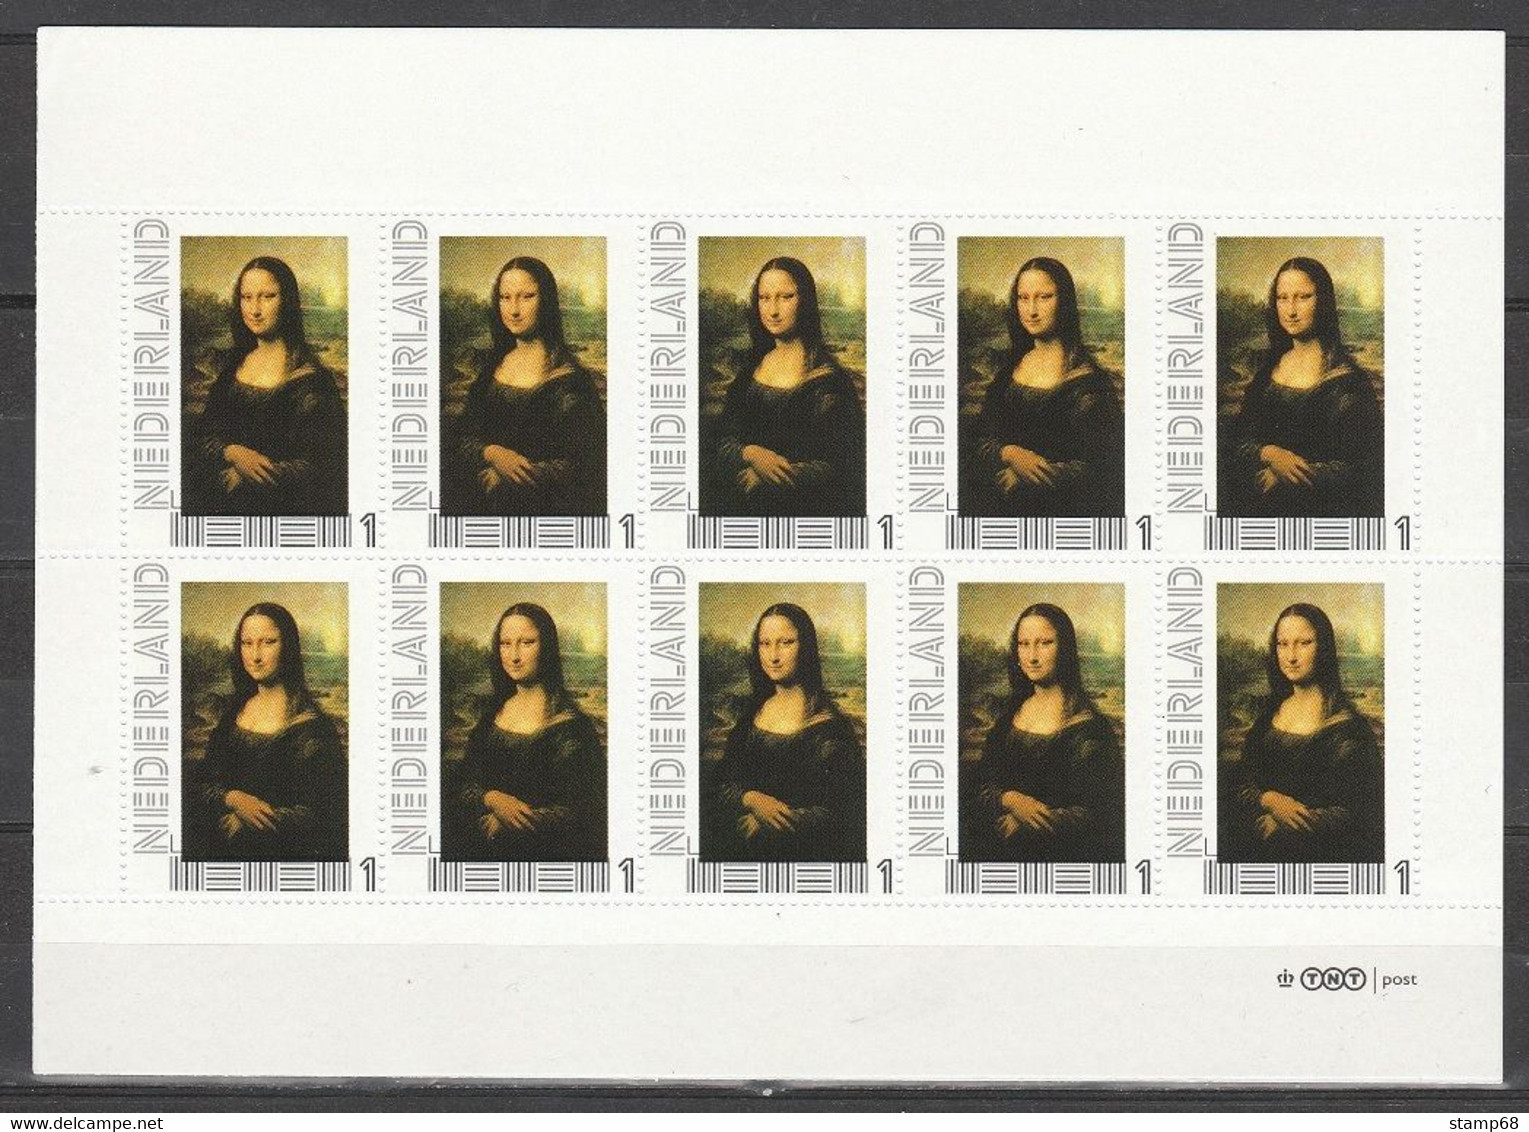 Nederland NVPH 2751 Vel Persoonlijke Zegels OKI Leonardo Da Vinci Mona Lisa 2011 MNH Postfris - Personalisierte Briefmarken